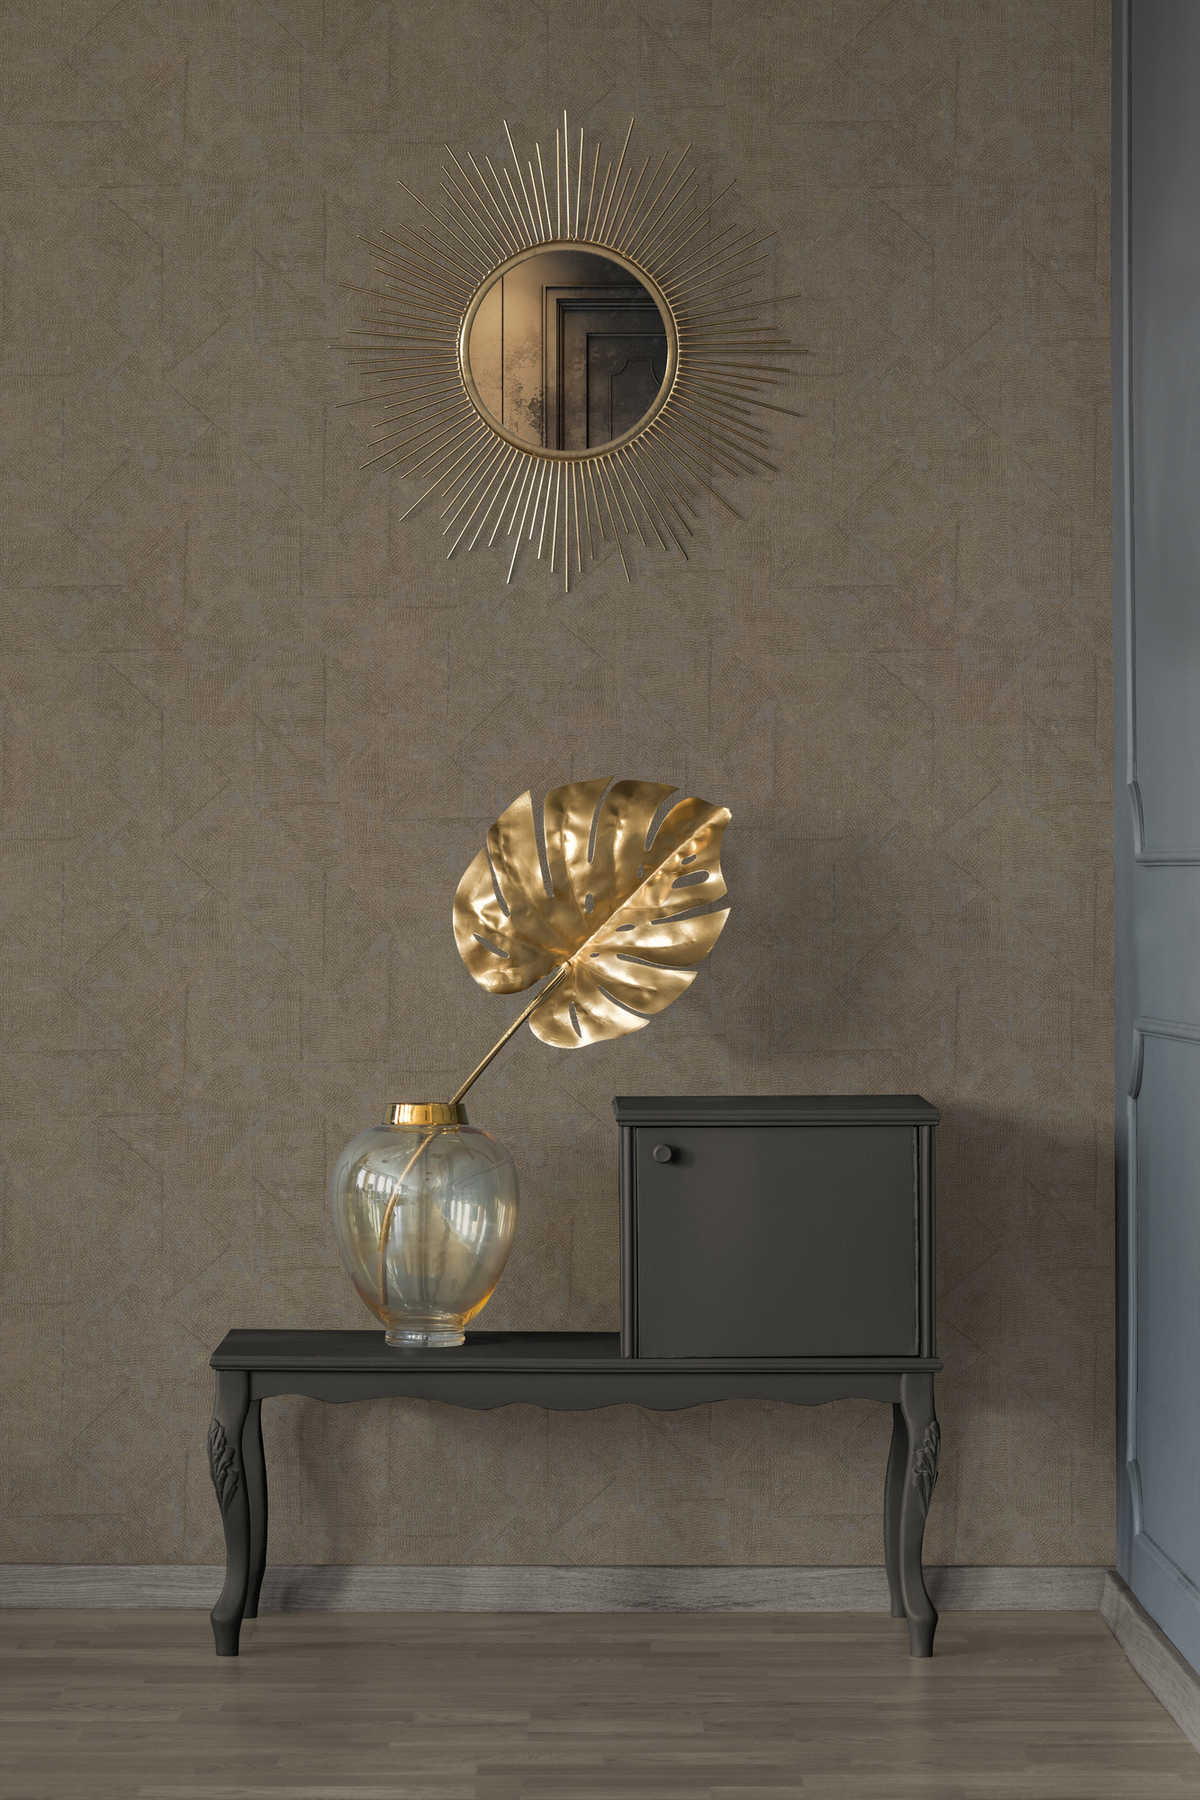             Behang in mediterrane stijl, met patroon - bruin, brons, grijs
        